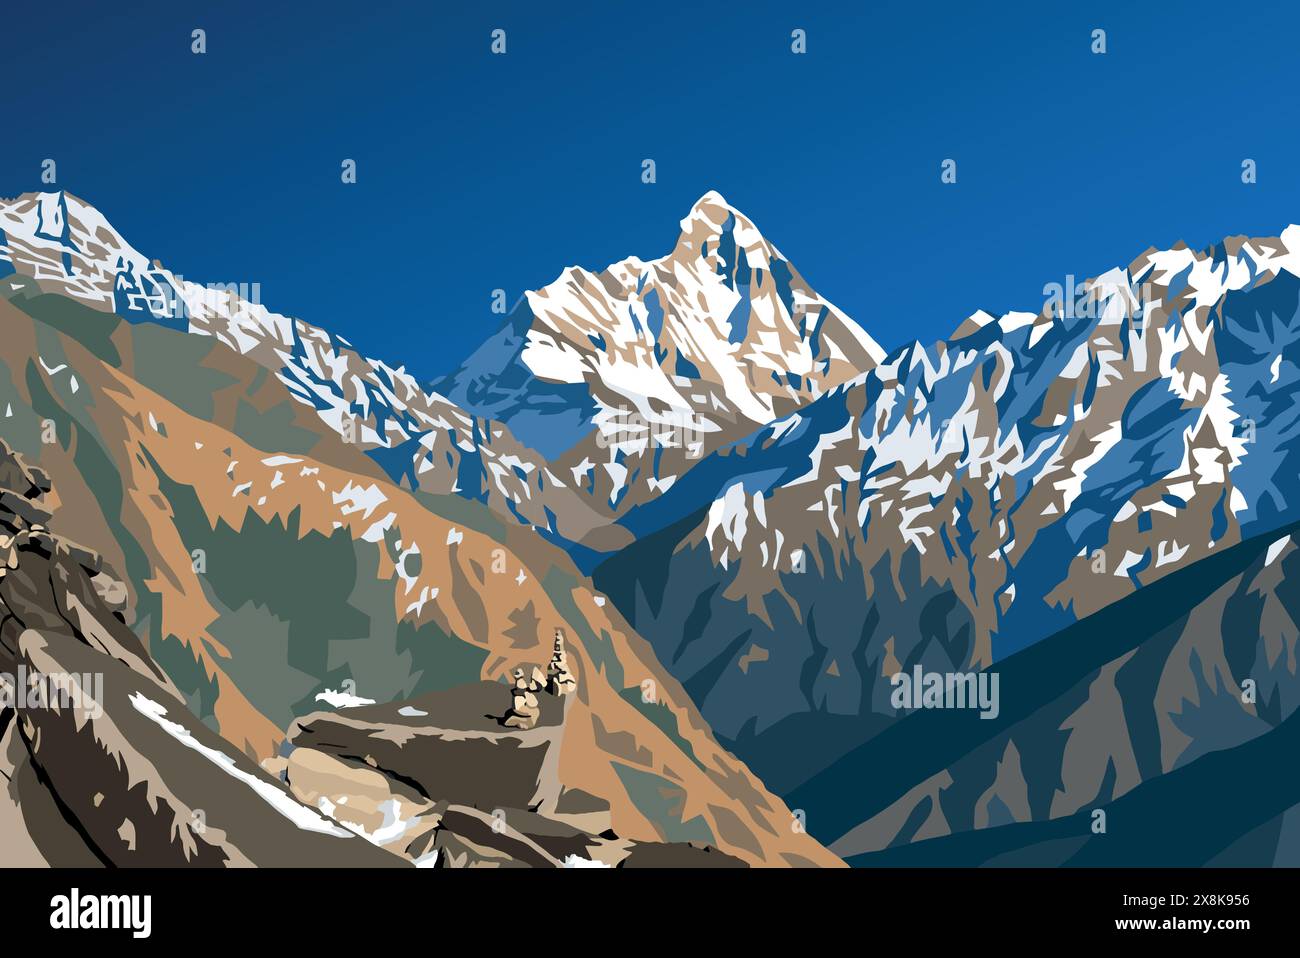 Berg Nanda Devi und Vektor-Illustration aus Stein, einer der besten Berge im indischen Himalaya, gesehen von Joshimath Auli, Uttarakhand, Indien, Indi Stock Vektor